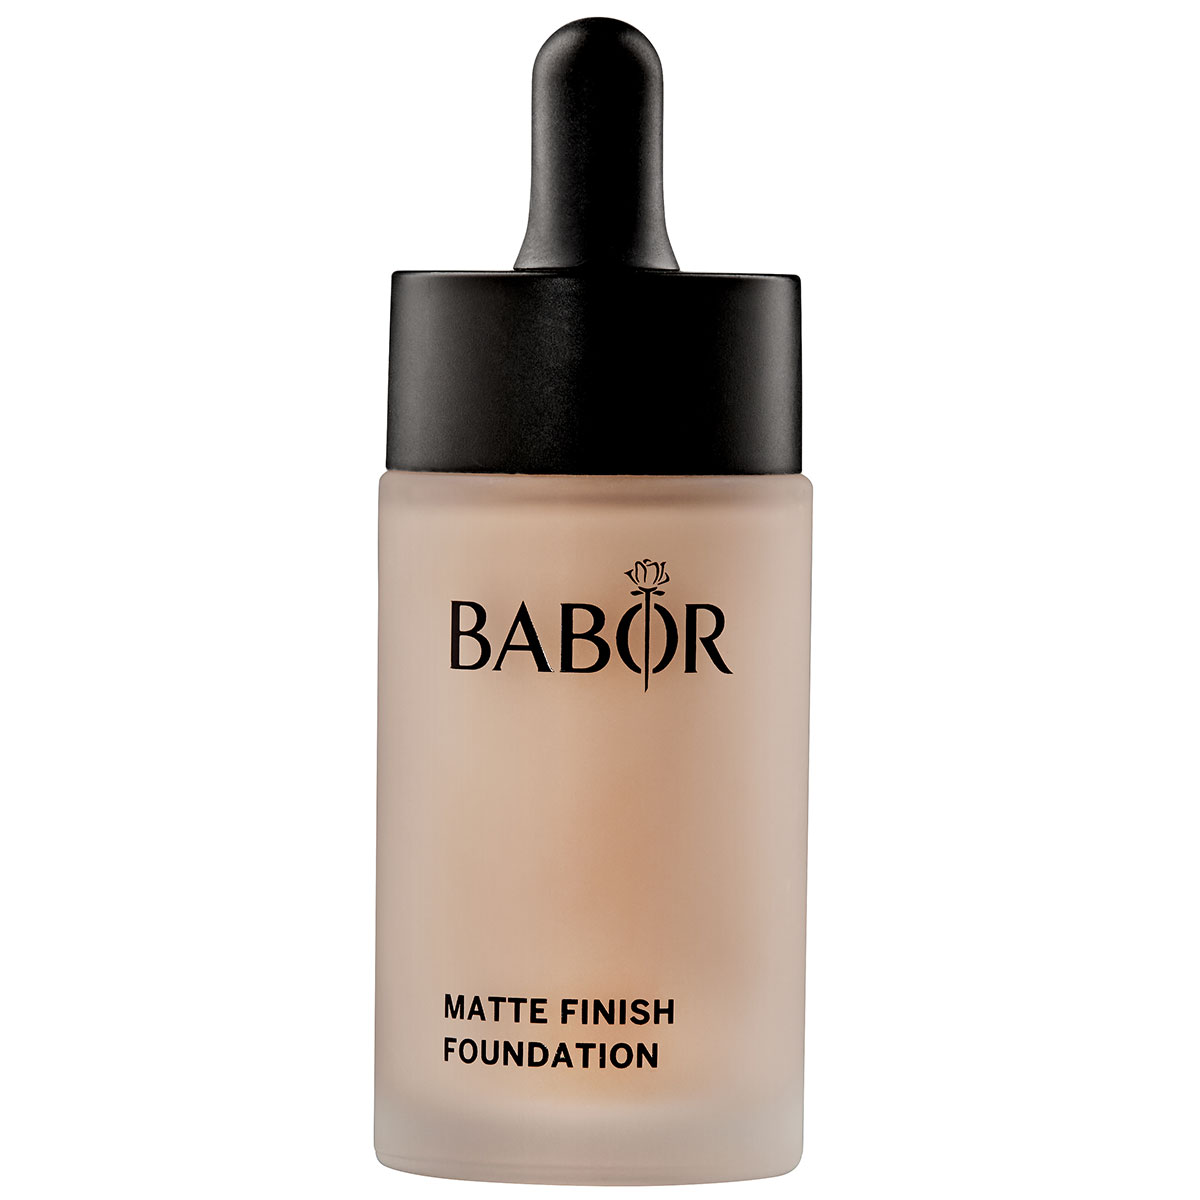 BABOR Matte Finish Foundation, 04 almond - интернет-магазин профессиональной косметики Spadream, изображение 41250